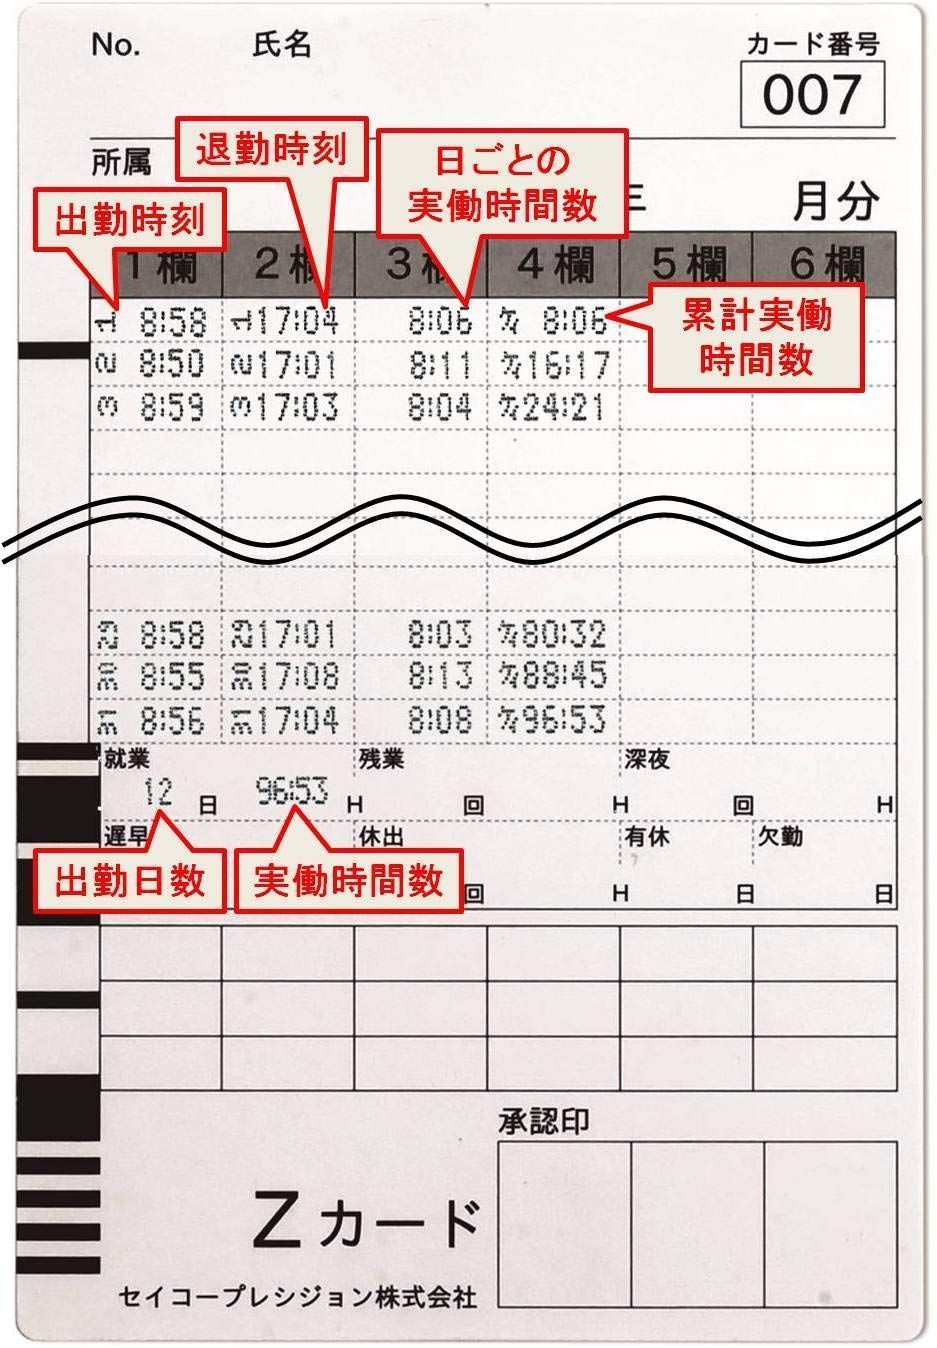 セイコープレシジョン タイムレコーダー QR-4550ホワイト - 4